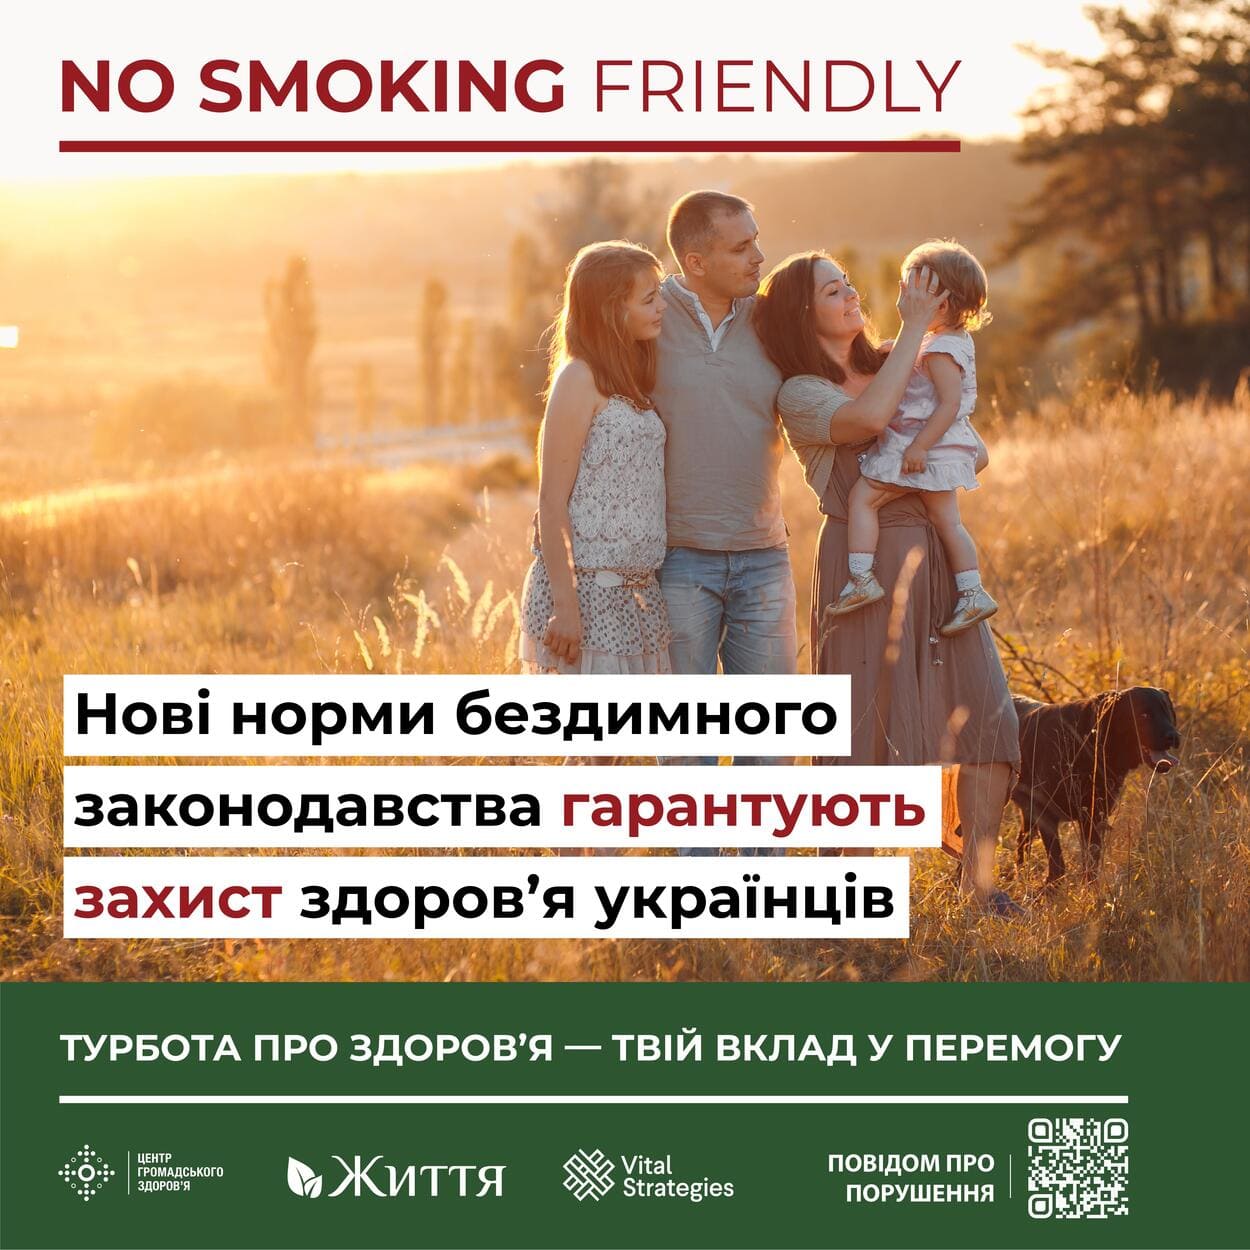 Ризики пасивного куріння